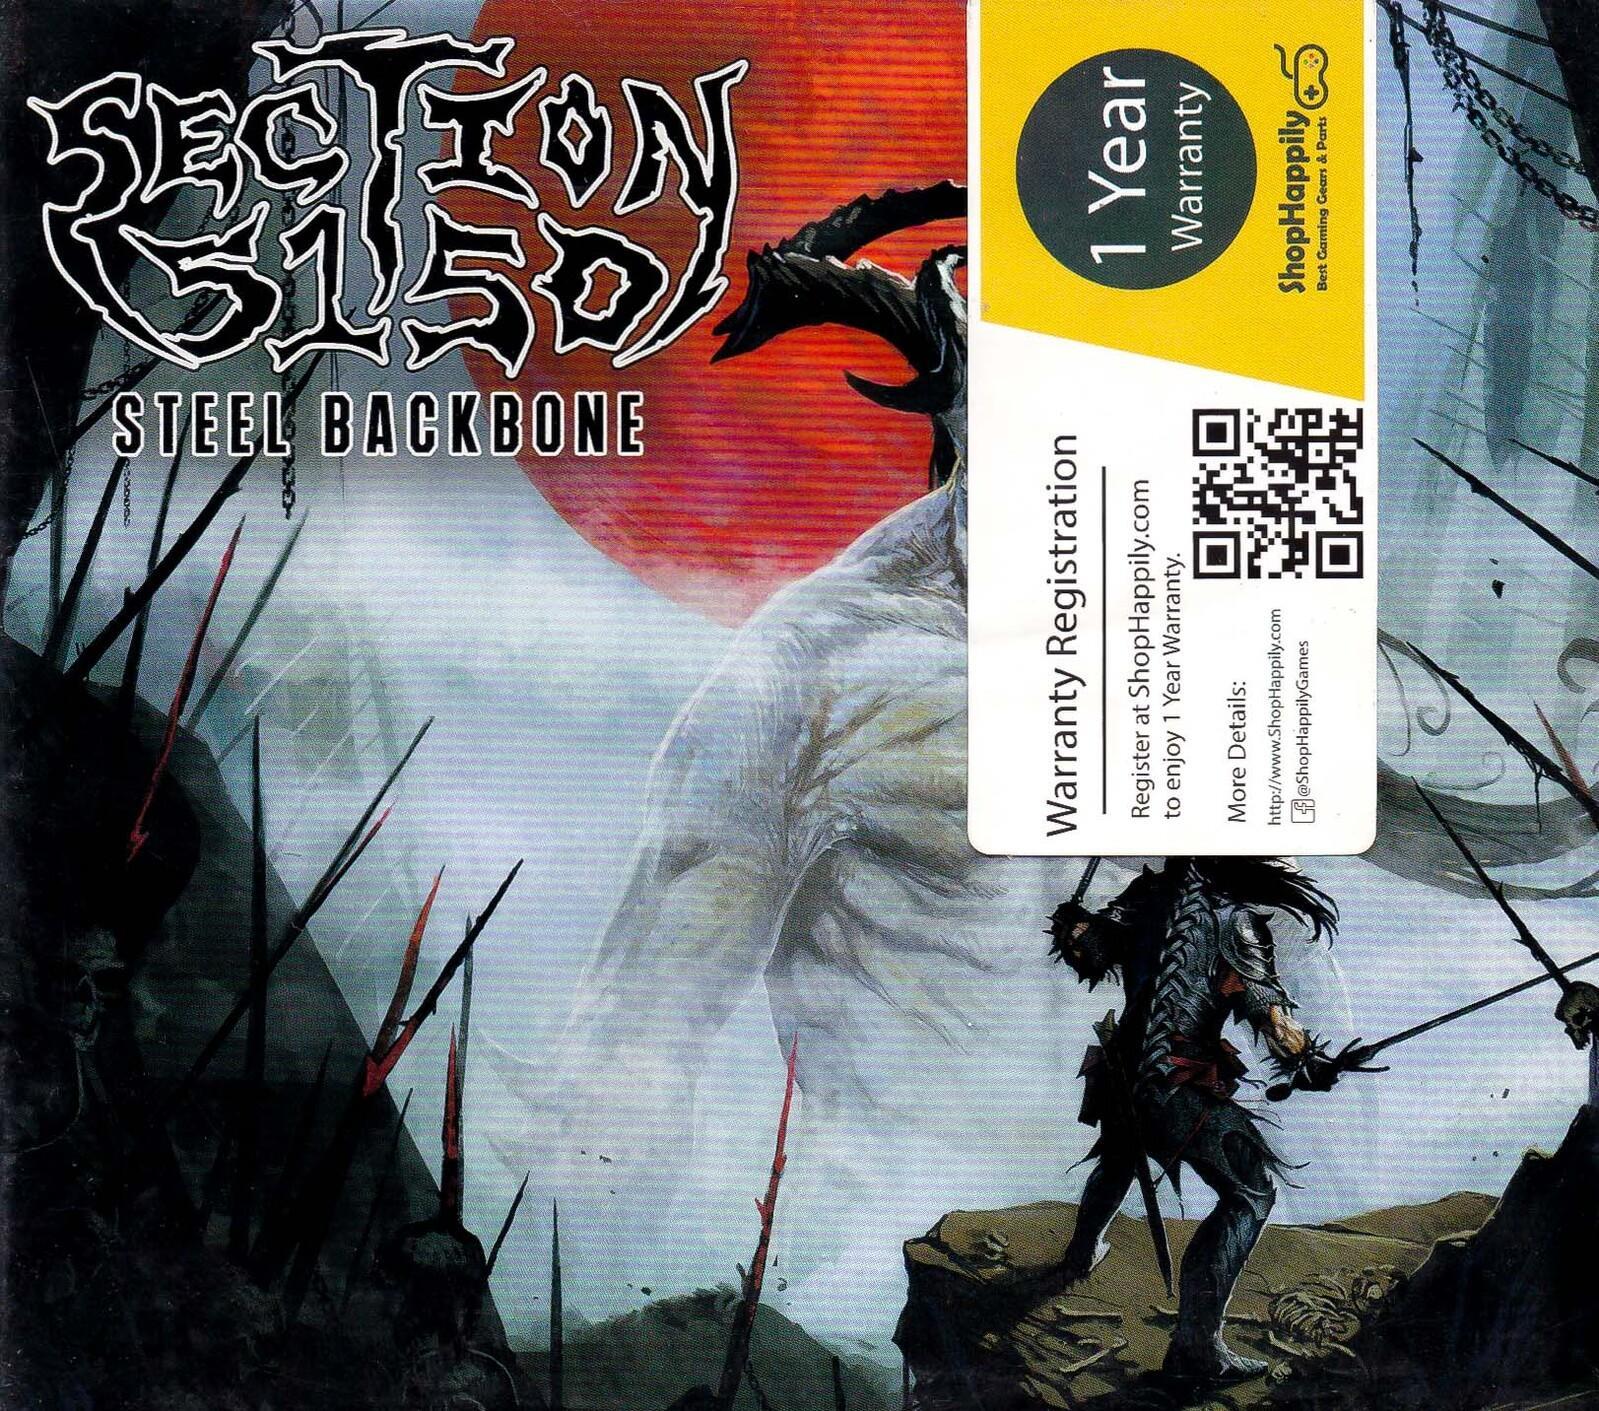 Steel Backbone -Section 5150 CD